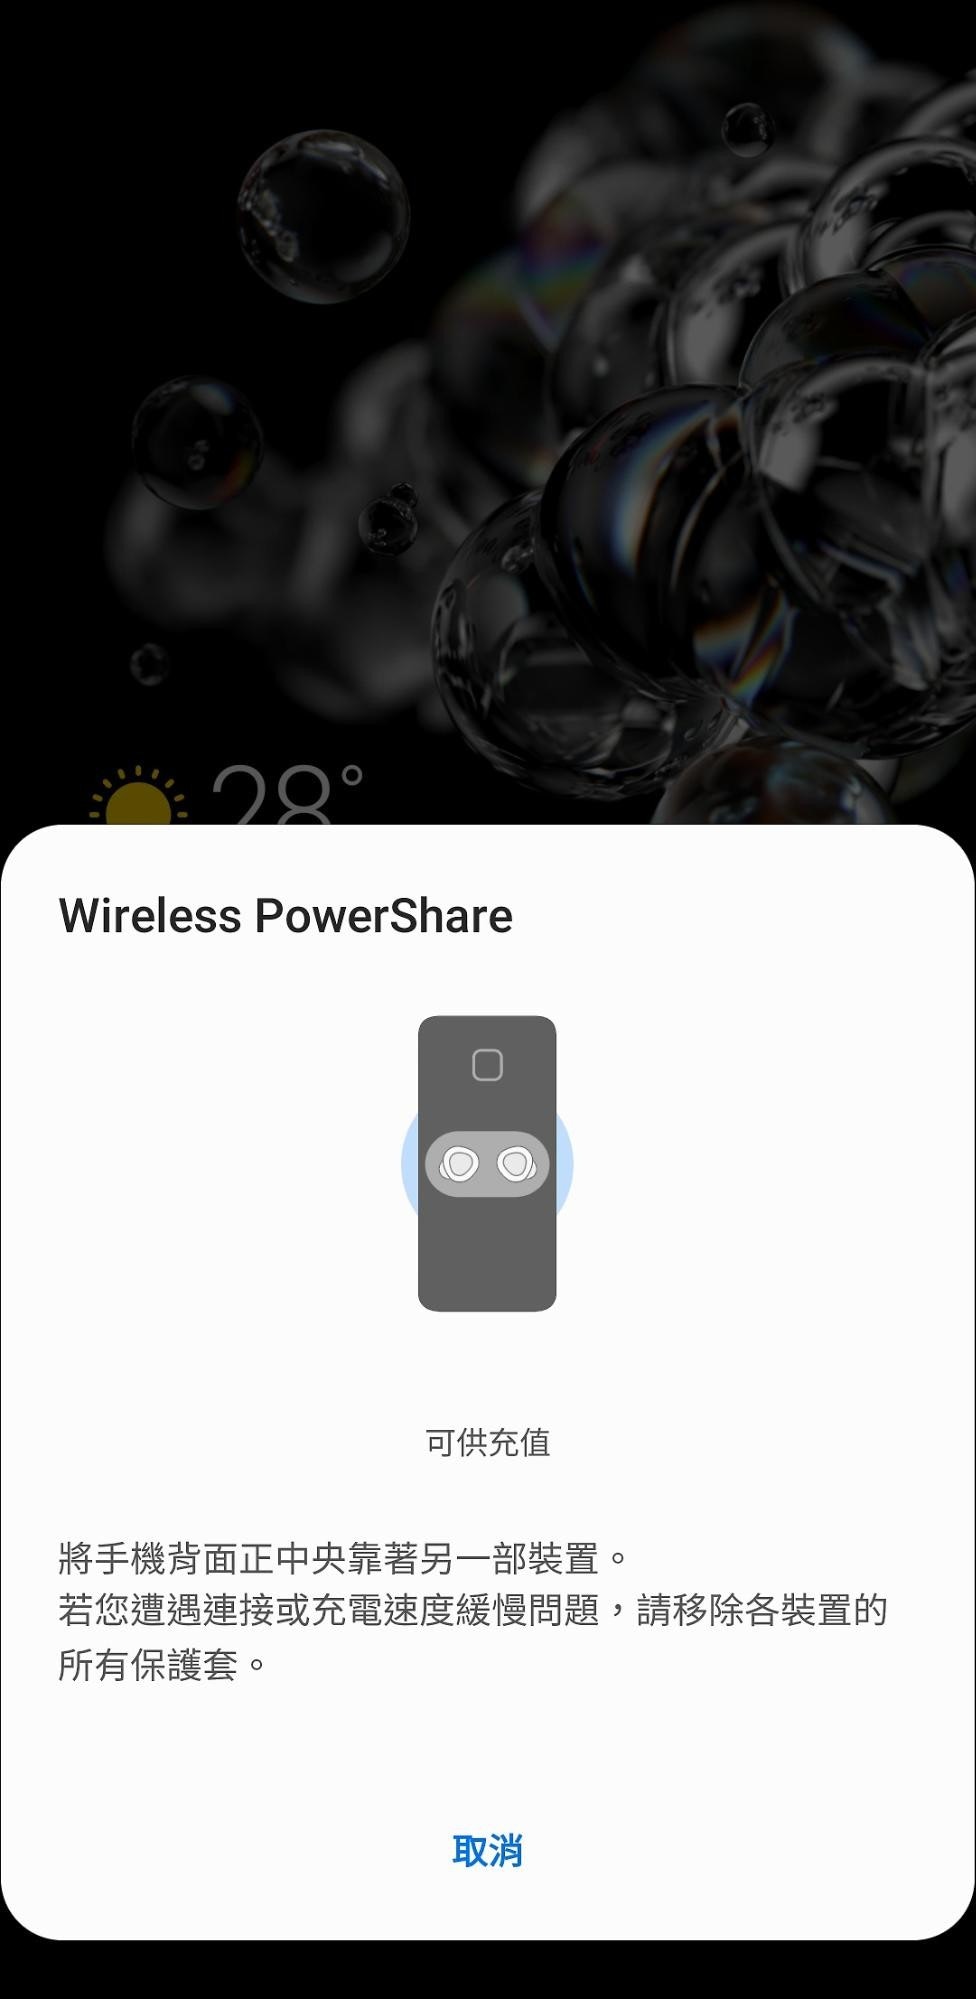 照片中提到了Wireless PowerShare、可供充值、将手机背面正中央靠著另一部装置。，包含了三星S20主屏、三星Galaxy S20 Ultra、三星、电脑显示器、主屏幕